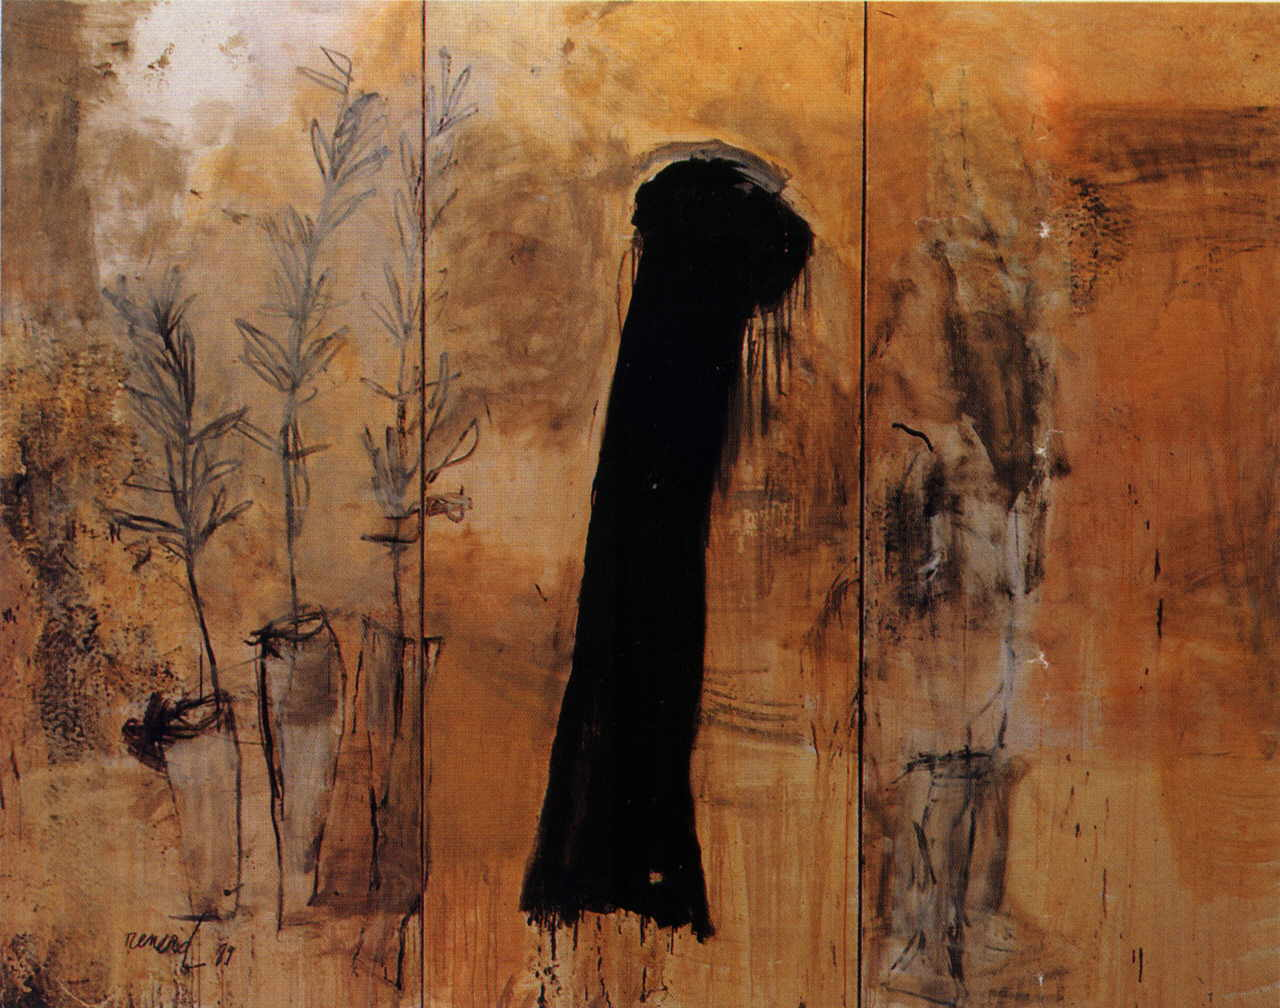 Renard Emmanuelle 
"Tryptichon", 1989
Mischtechnik / Leinwand
250 x 330 cm